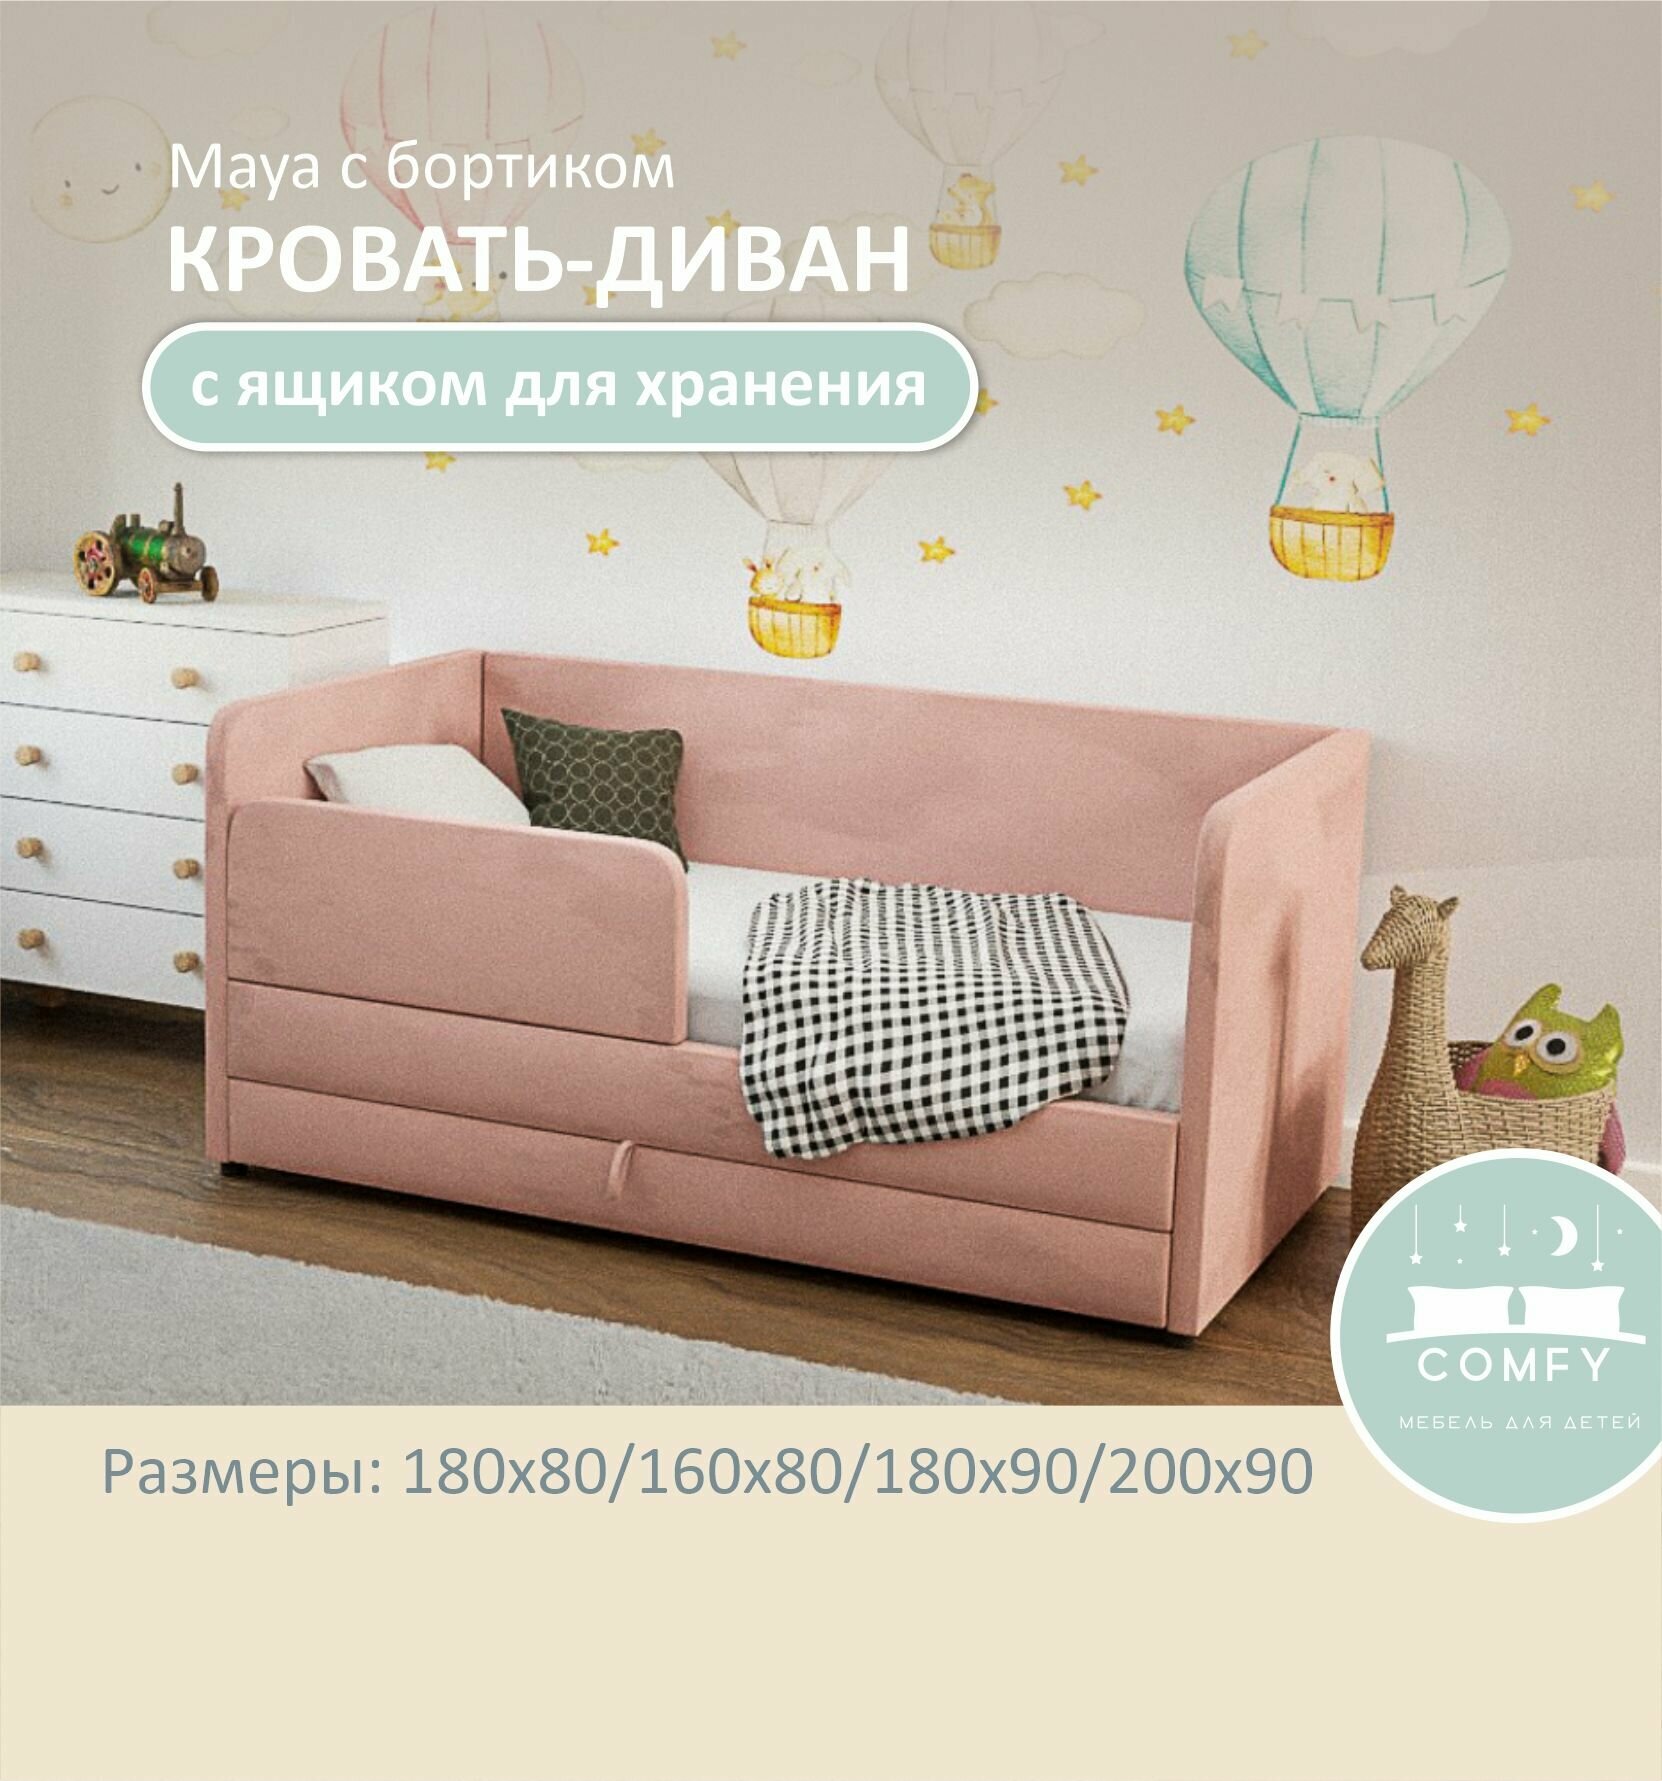 Детский диван-кровать Майя 180х90 см розовый Кровать с матрасом, чехлом, выкатным ящиком и бортиком Кровать детская от 3х лет